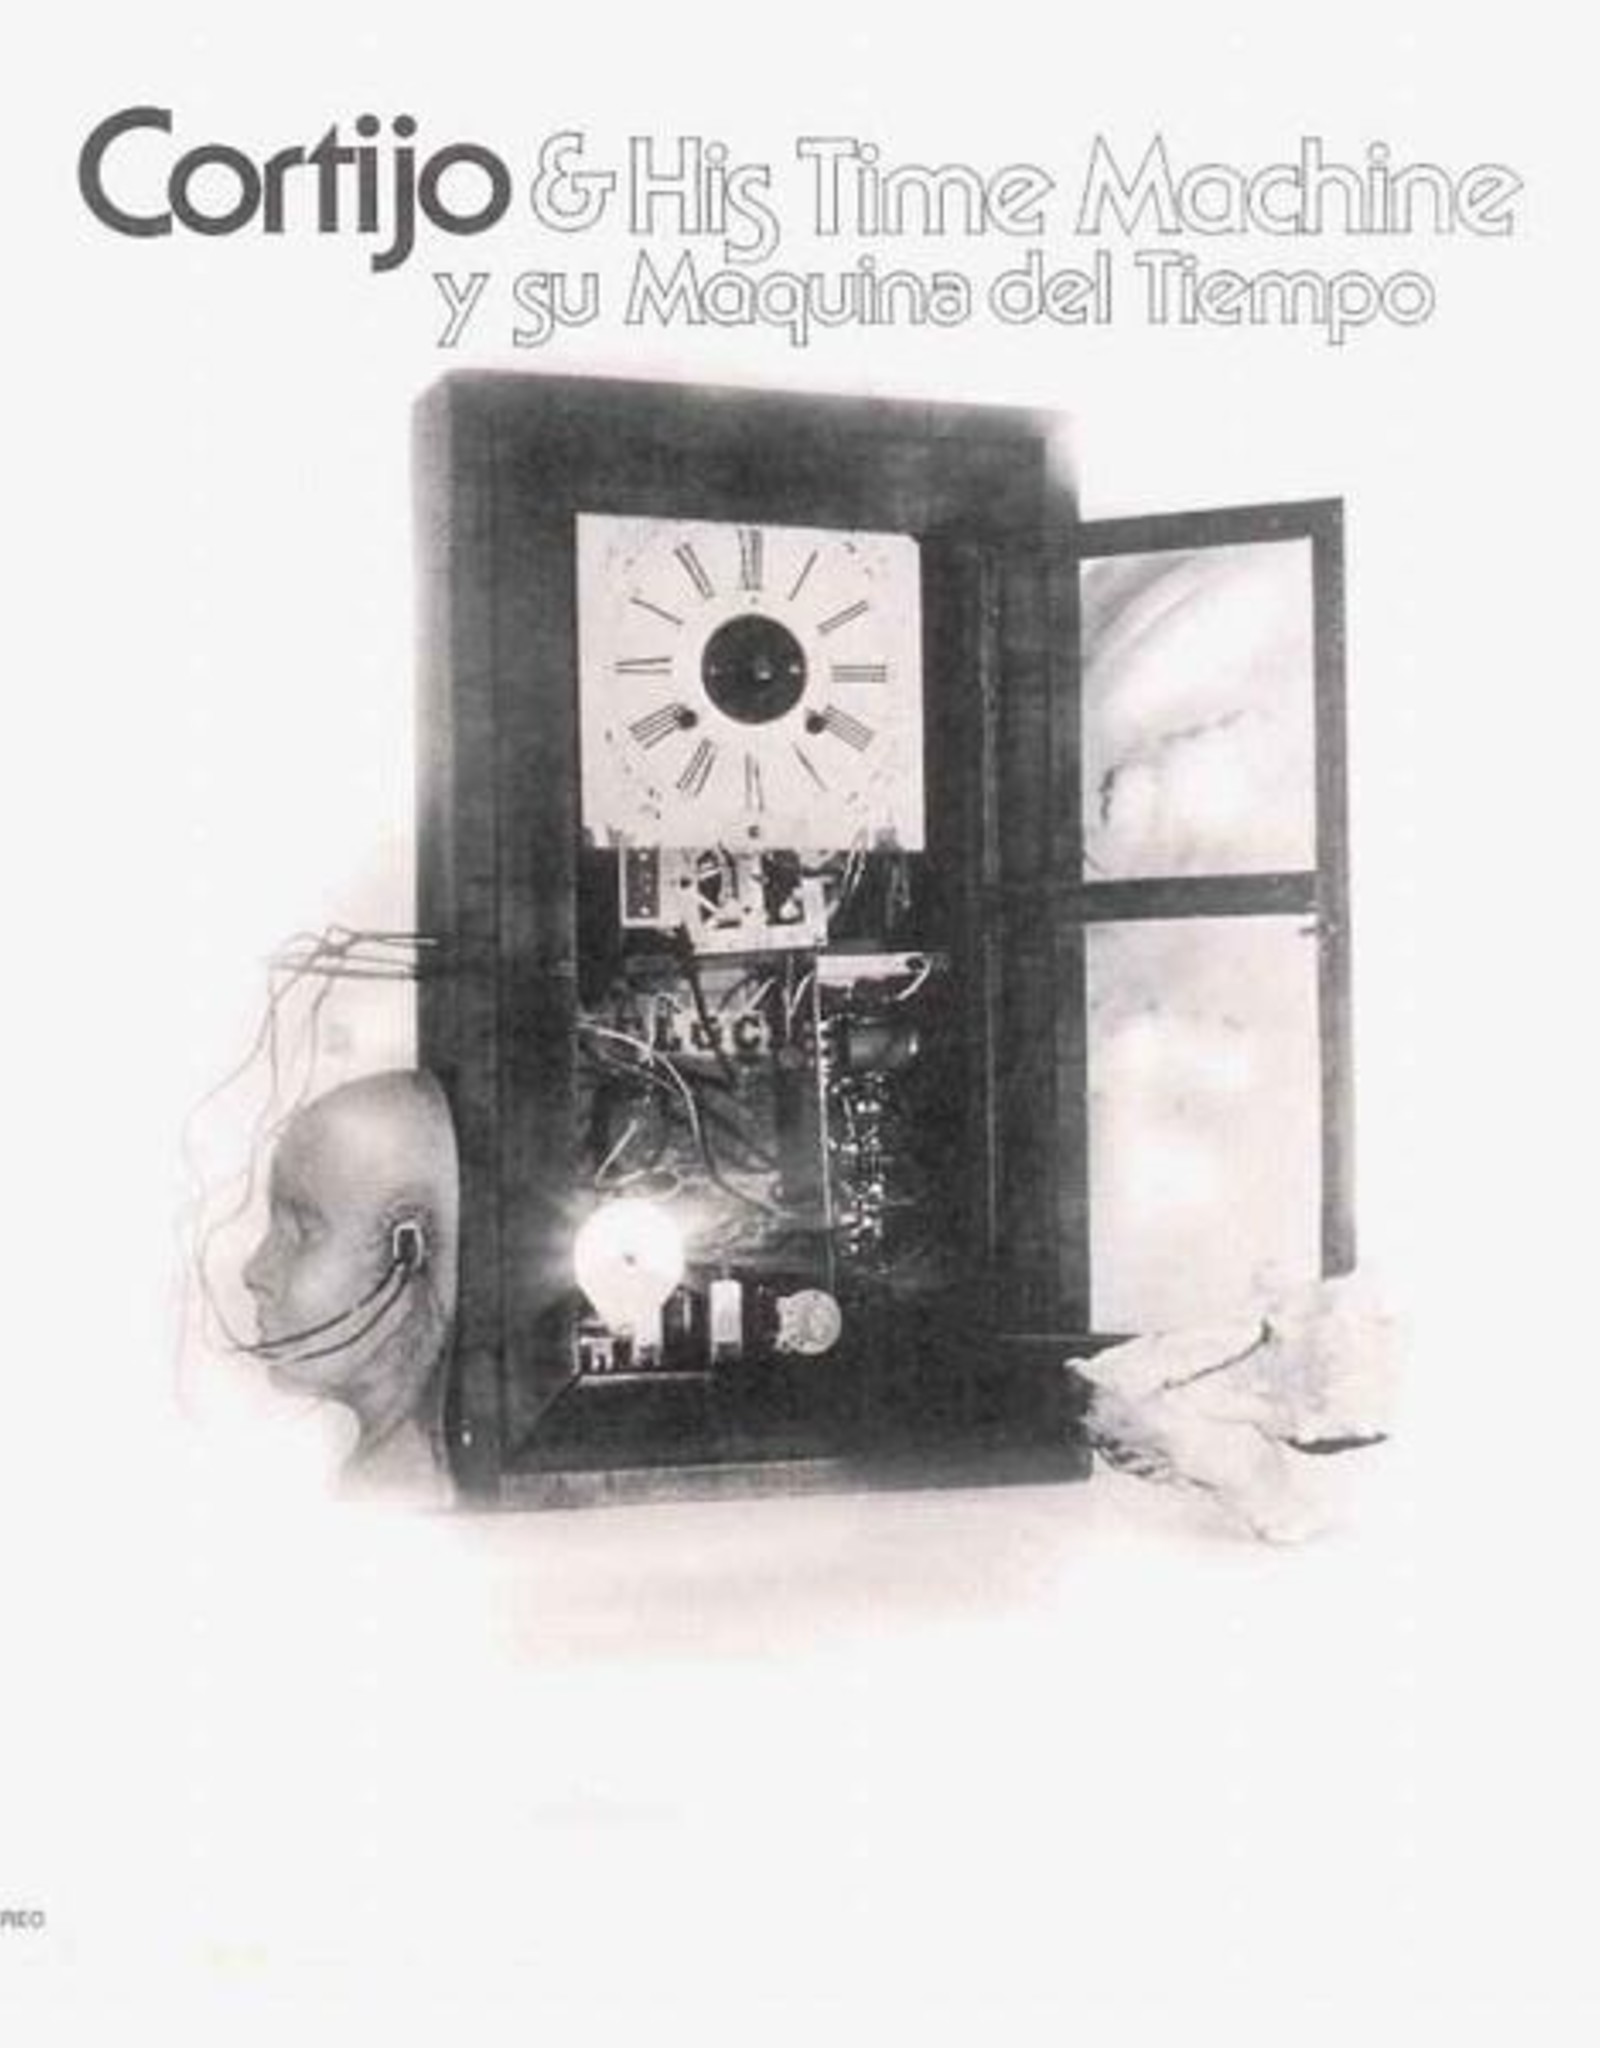 Cortijon & His Time Machine - y su Maquina de Tiempo